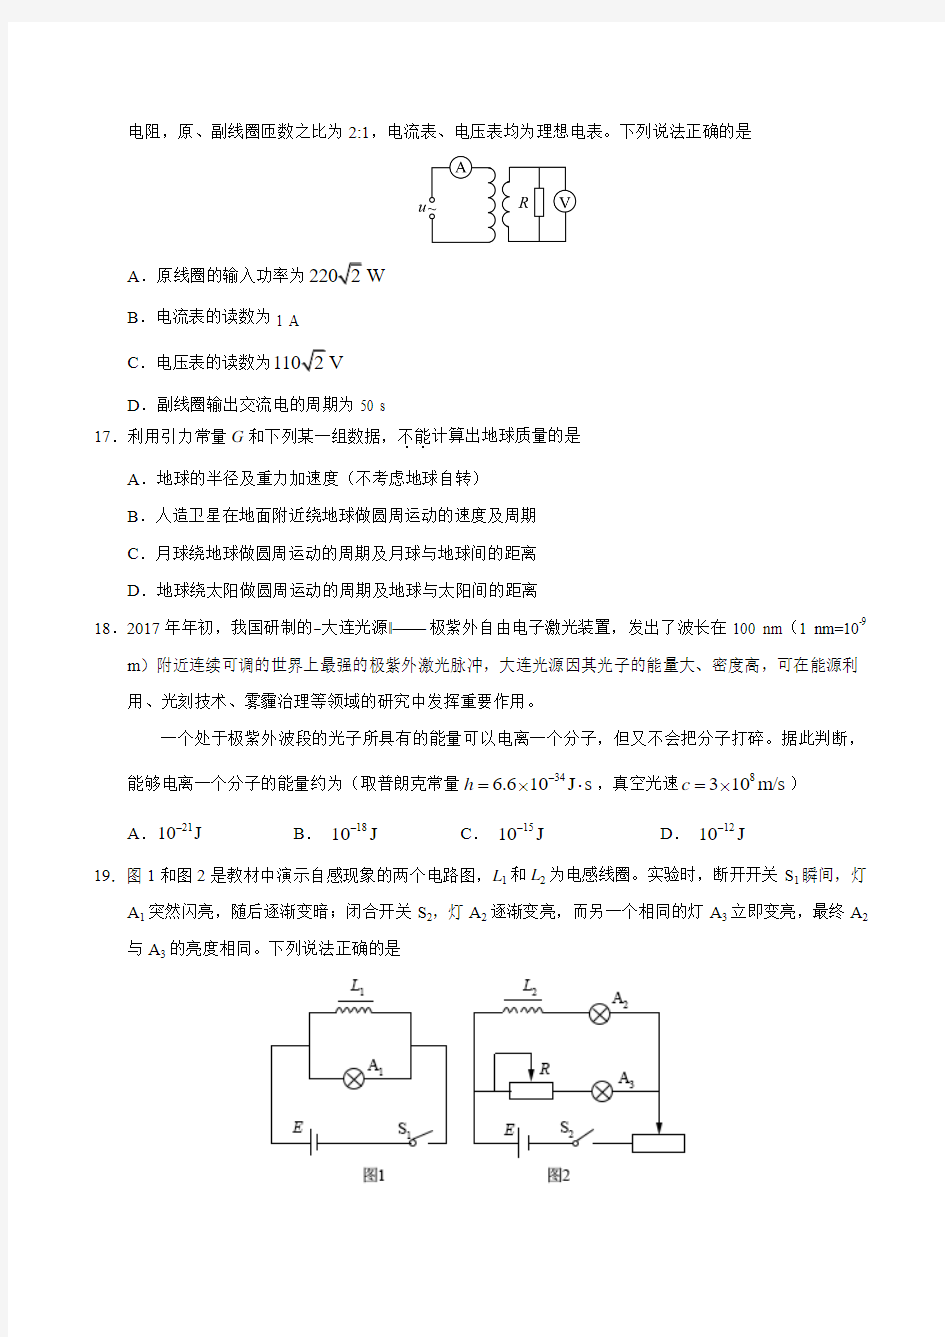 2017年高考试题 北京卷 物理部分 文档版(含答案)(精校版)